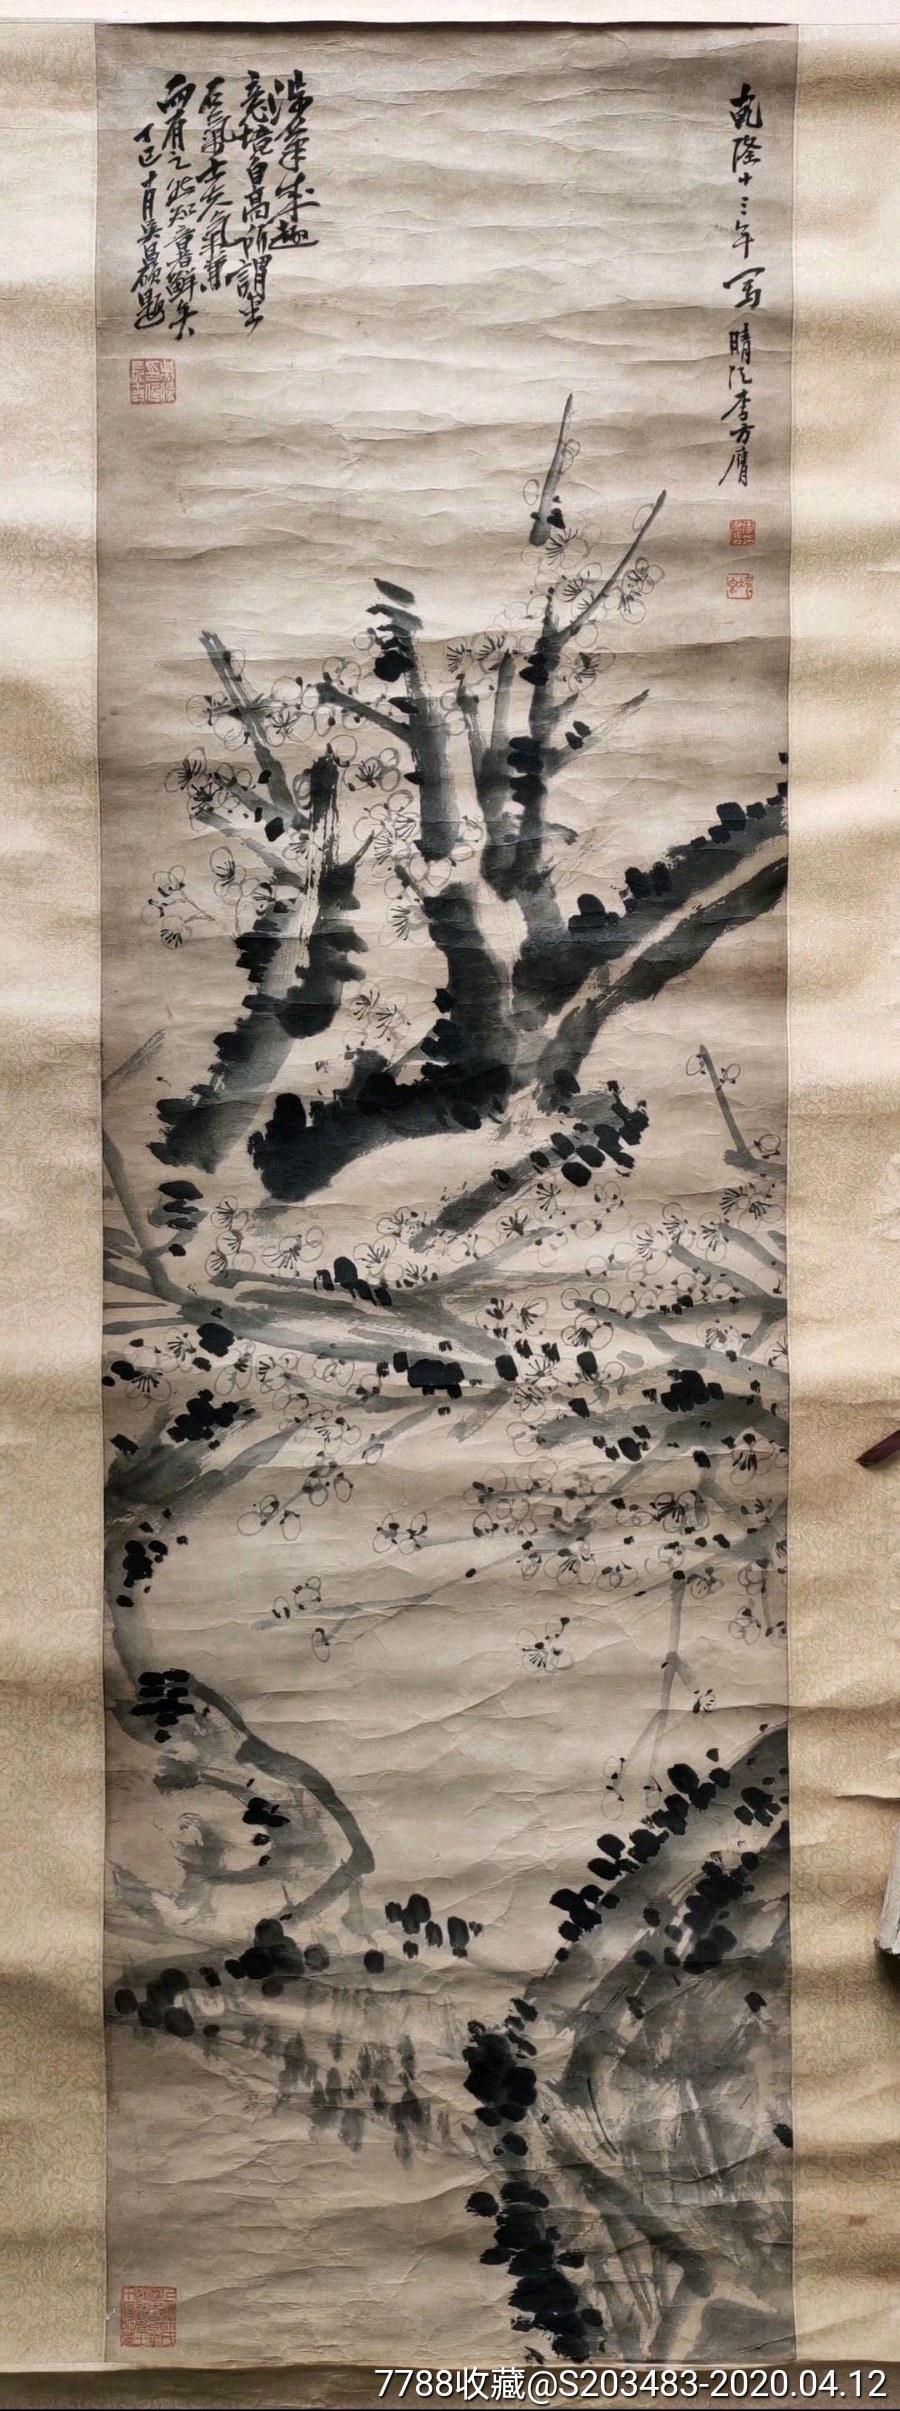 名人名家大师画家李方膺纯手工手绘老字画国画条幅竖幅作品